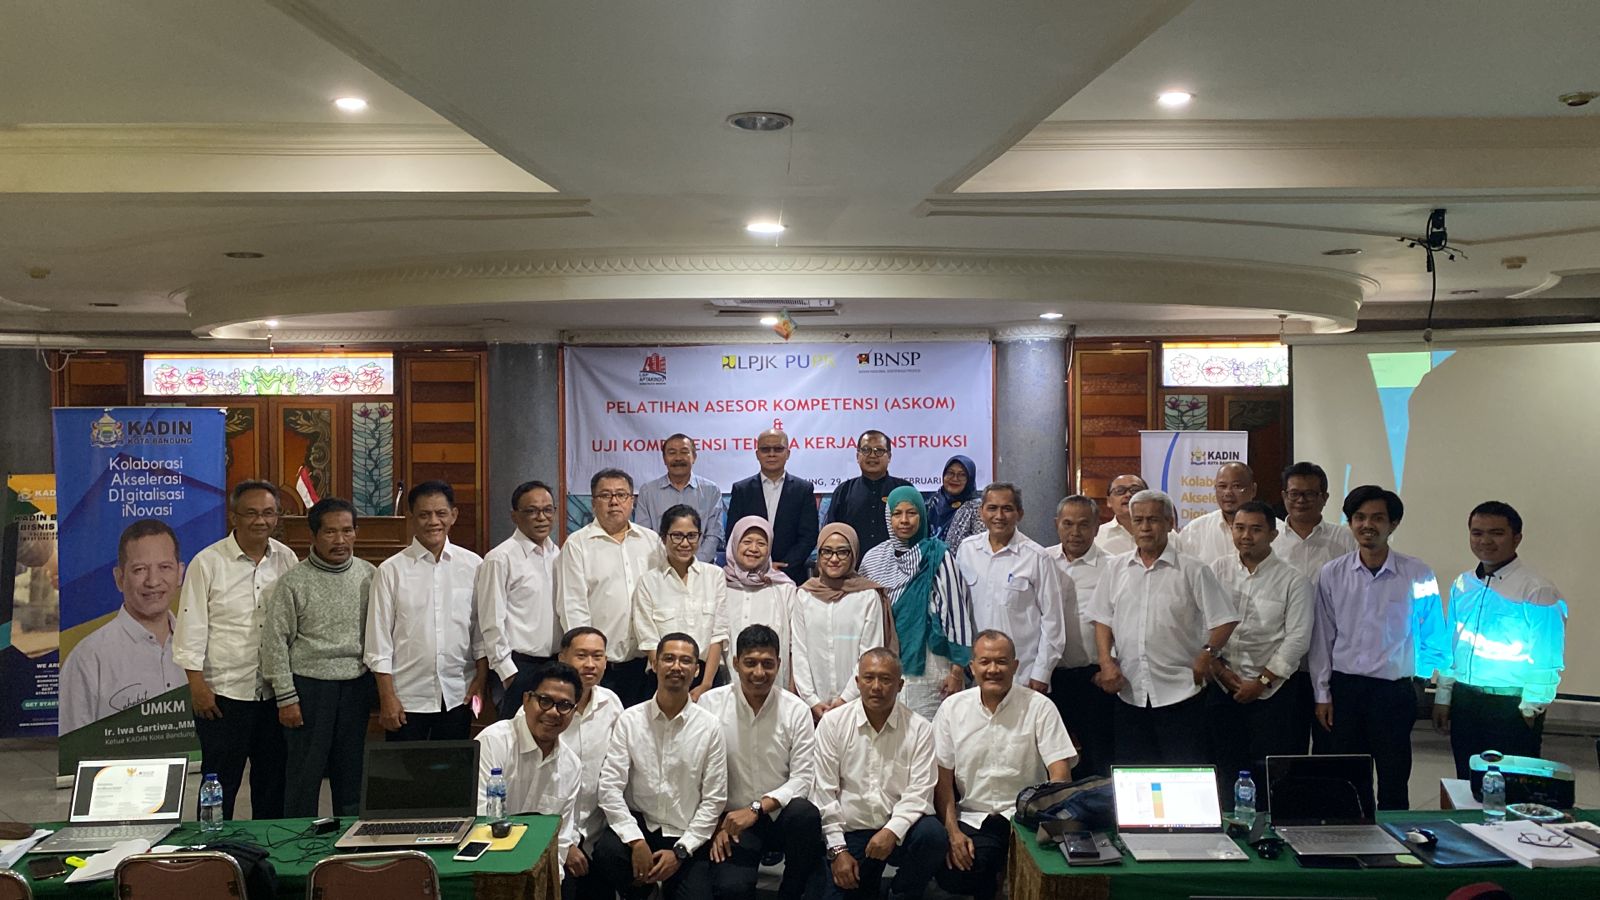 24 peserta Asesor Kompetensi (Askom) di Bandung.